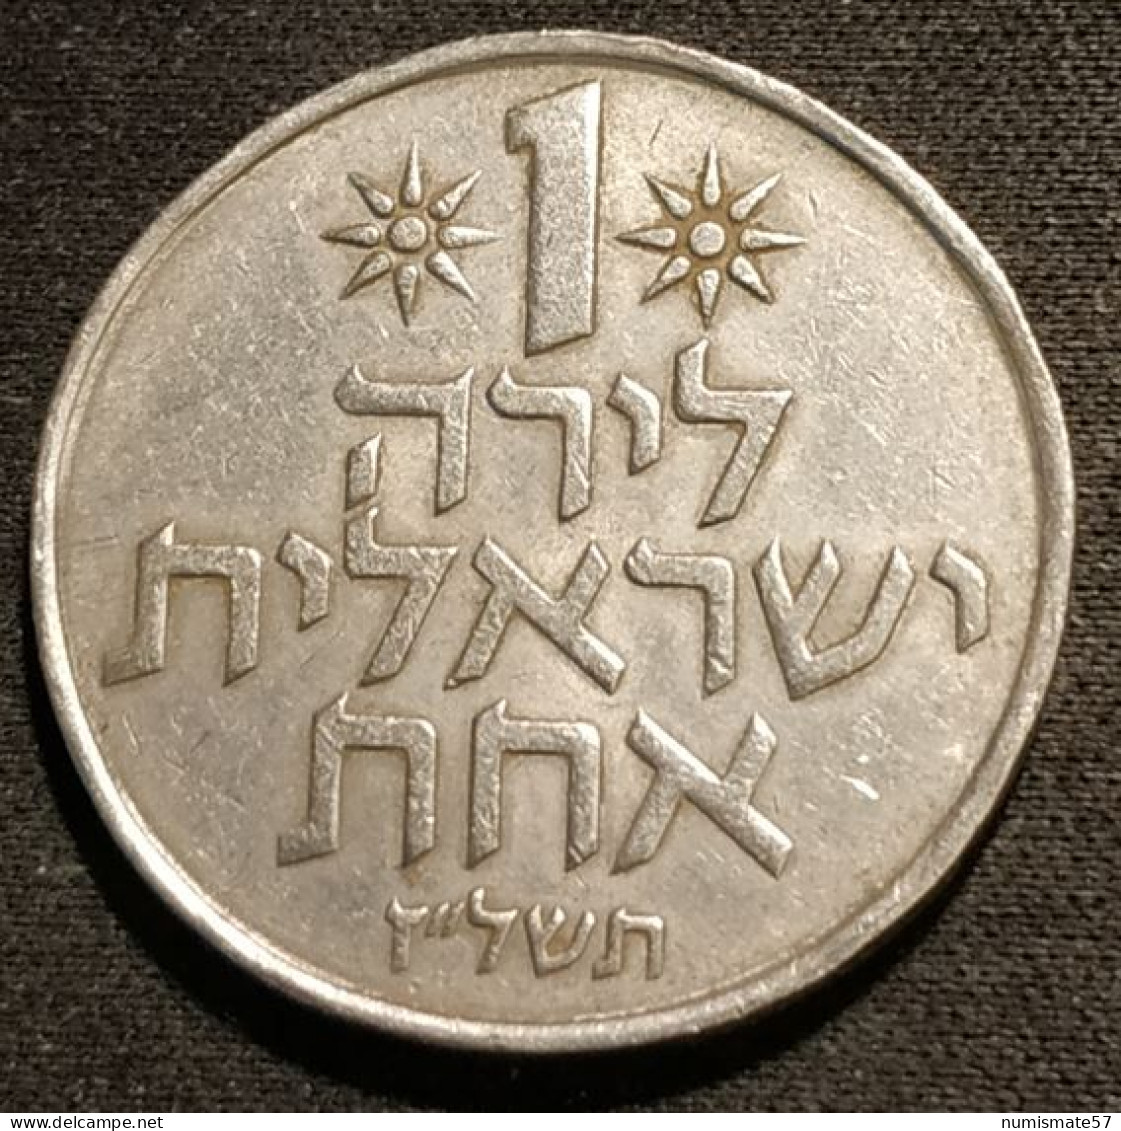 ISRAEL - 1 LIRA 1977 ( 5737 ) - KM 47.1 - Israel